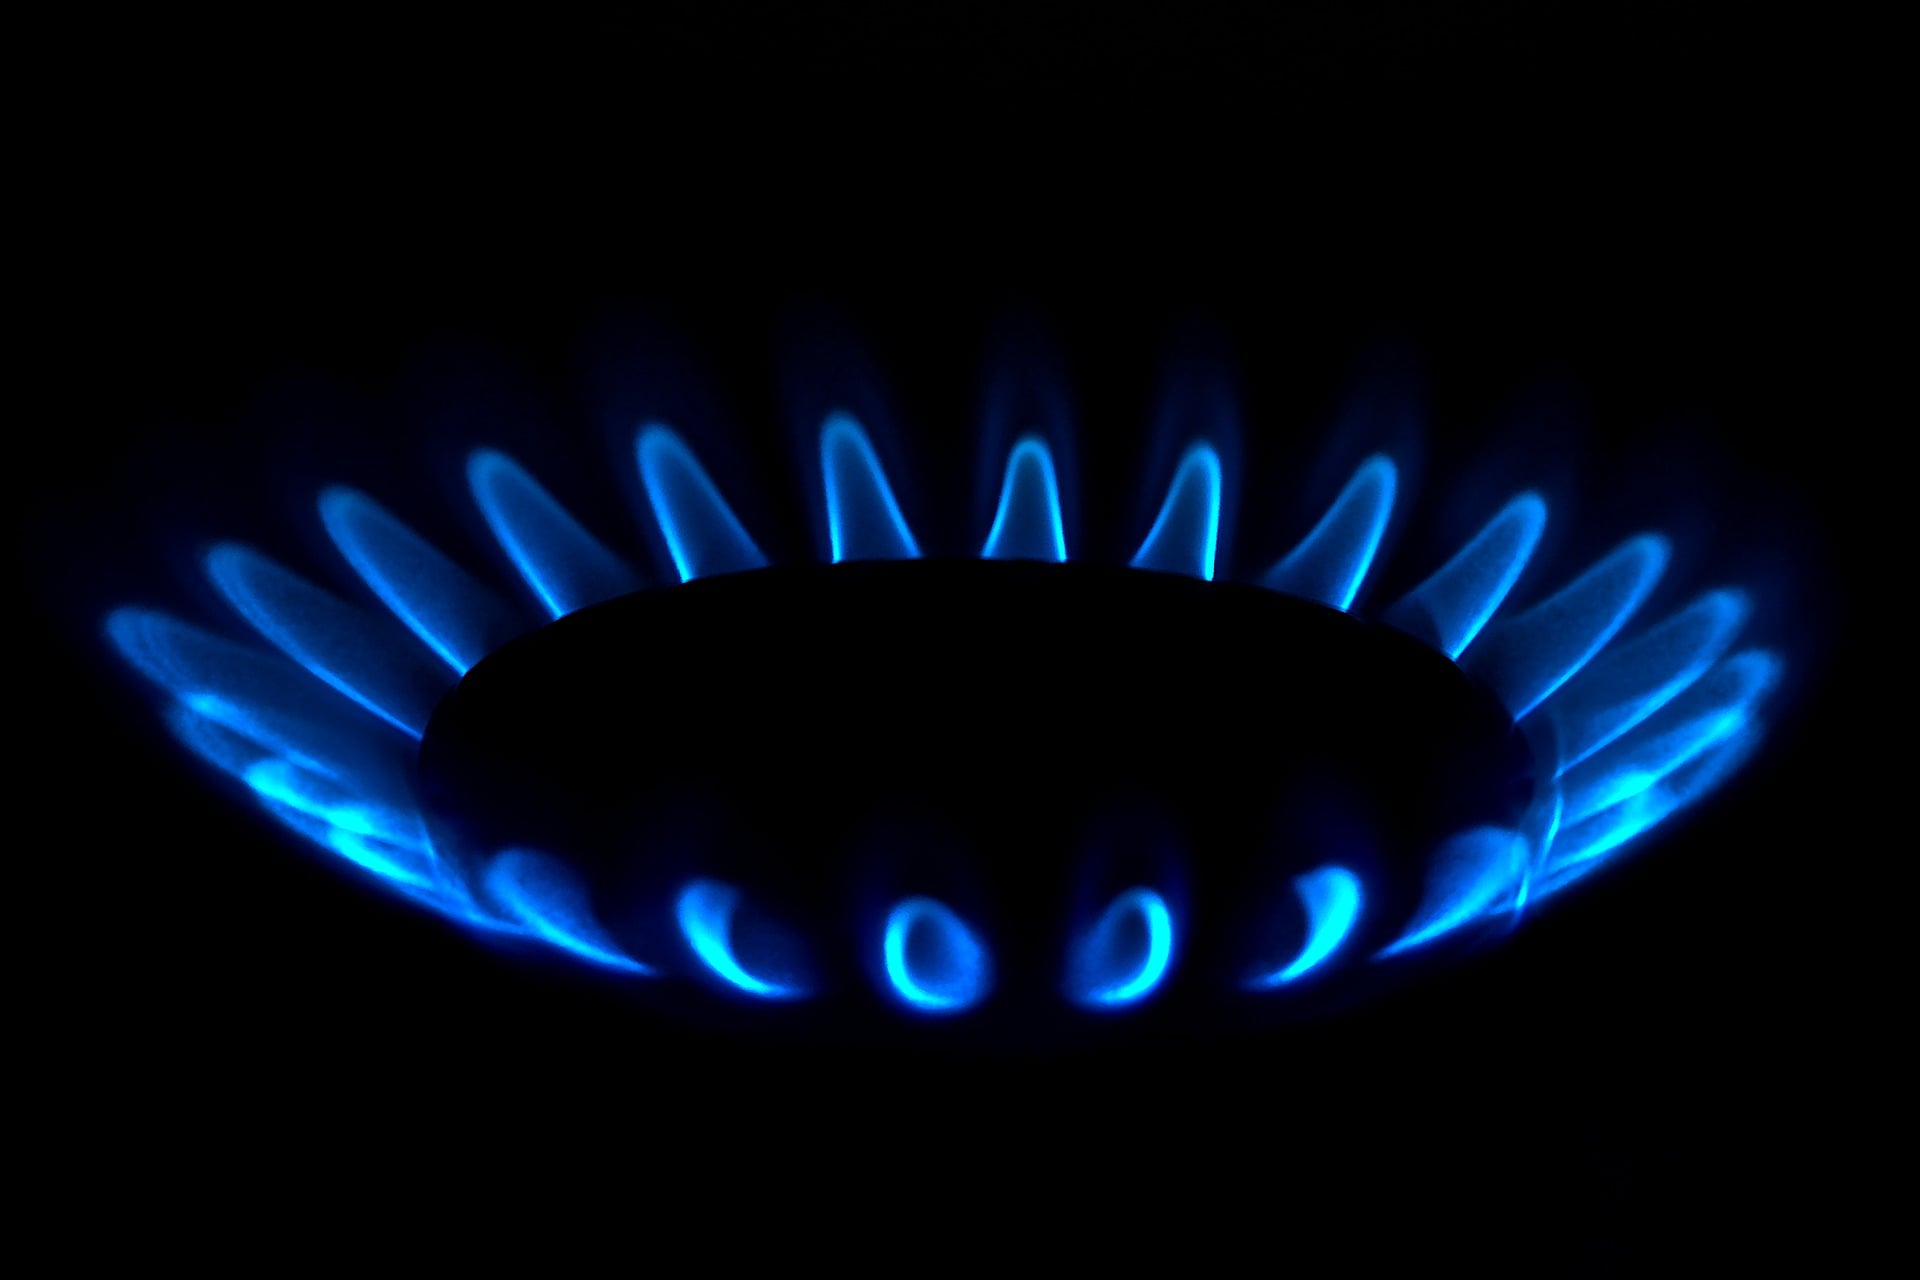 Запуск сервиса Gasworkers  
Компания ГАЗТЕХ объявила о полноценном запуске платформы Gasworkers.